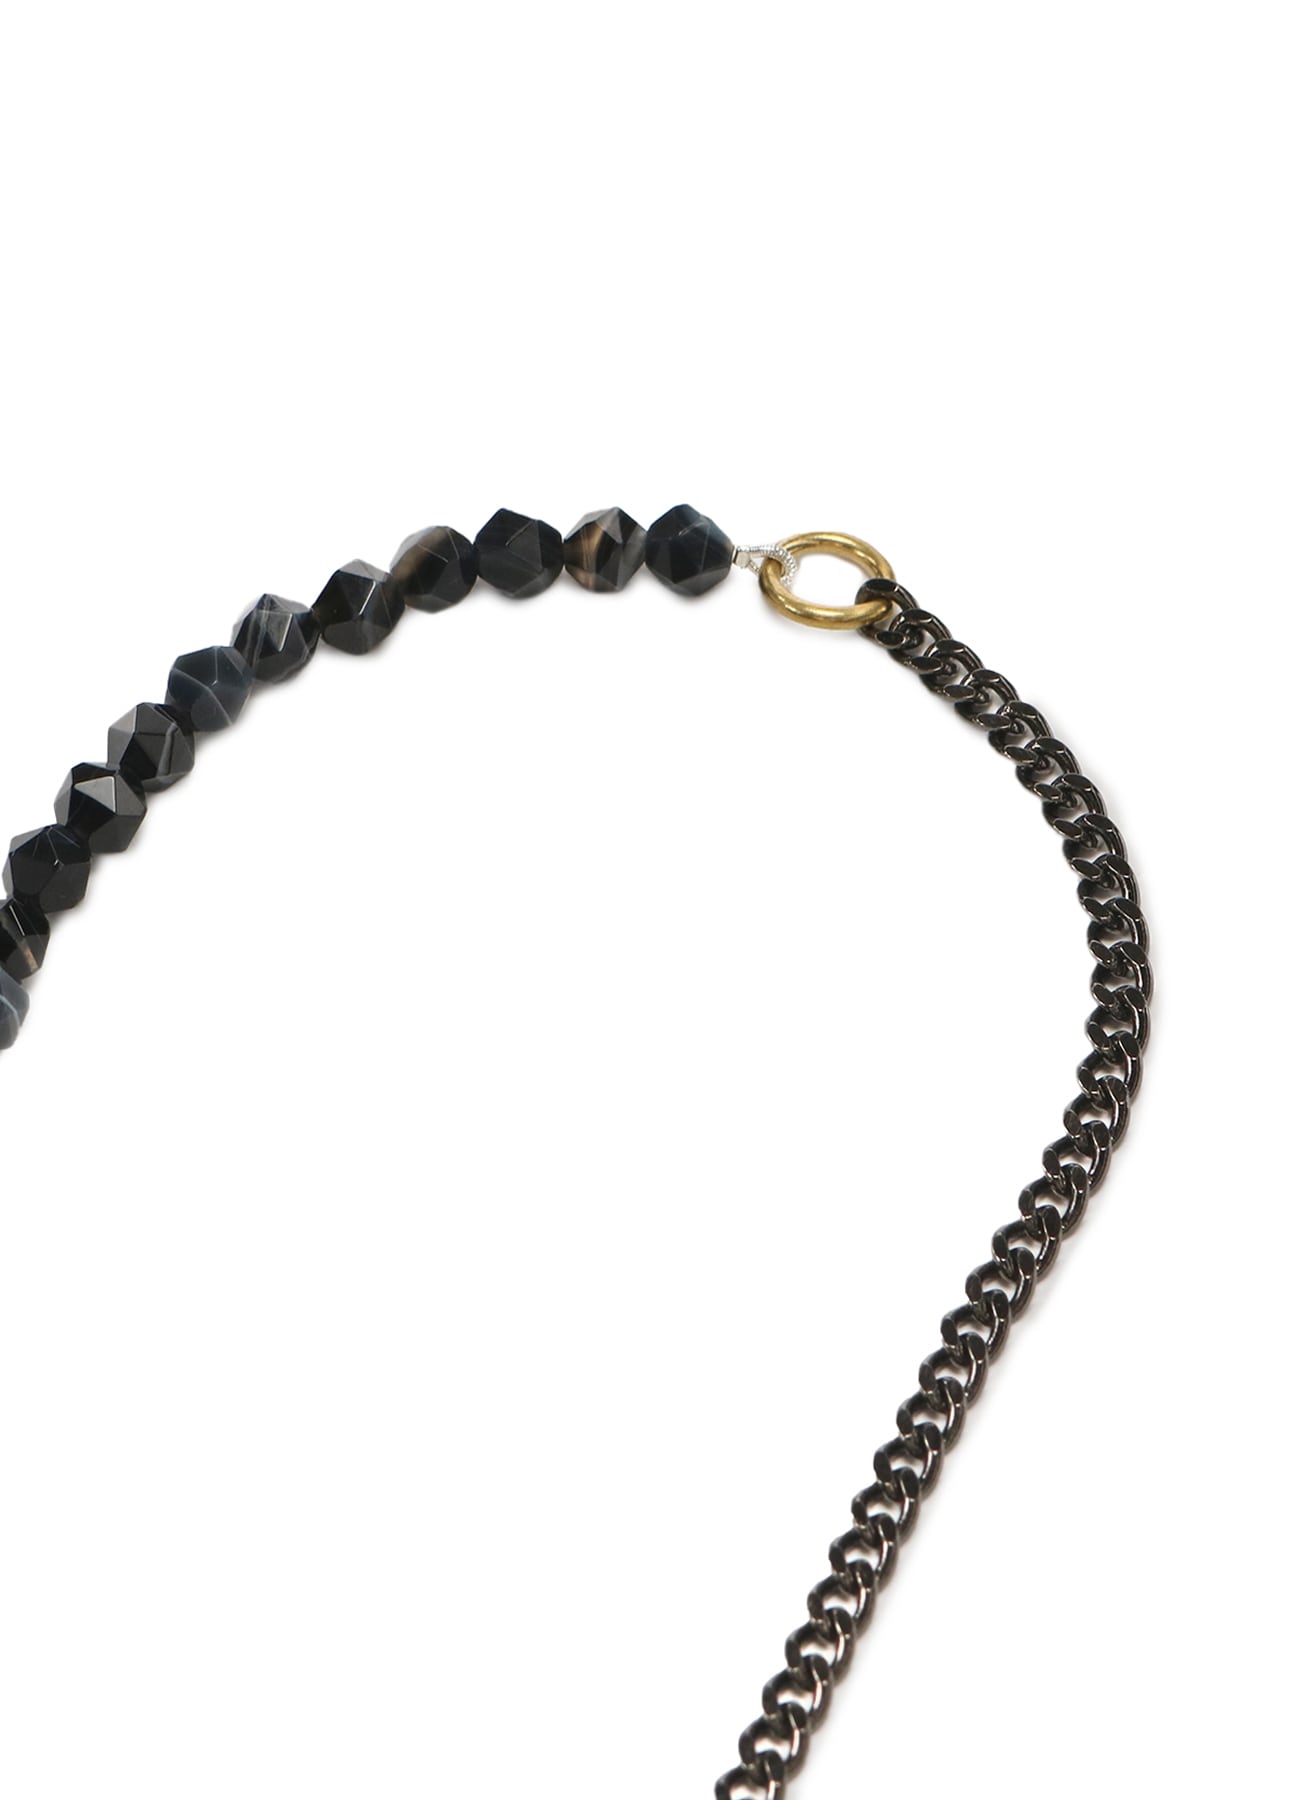 Onyx Brass Chain Necklace Bracelet (FREE SIZE Silver): S'YTE 